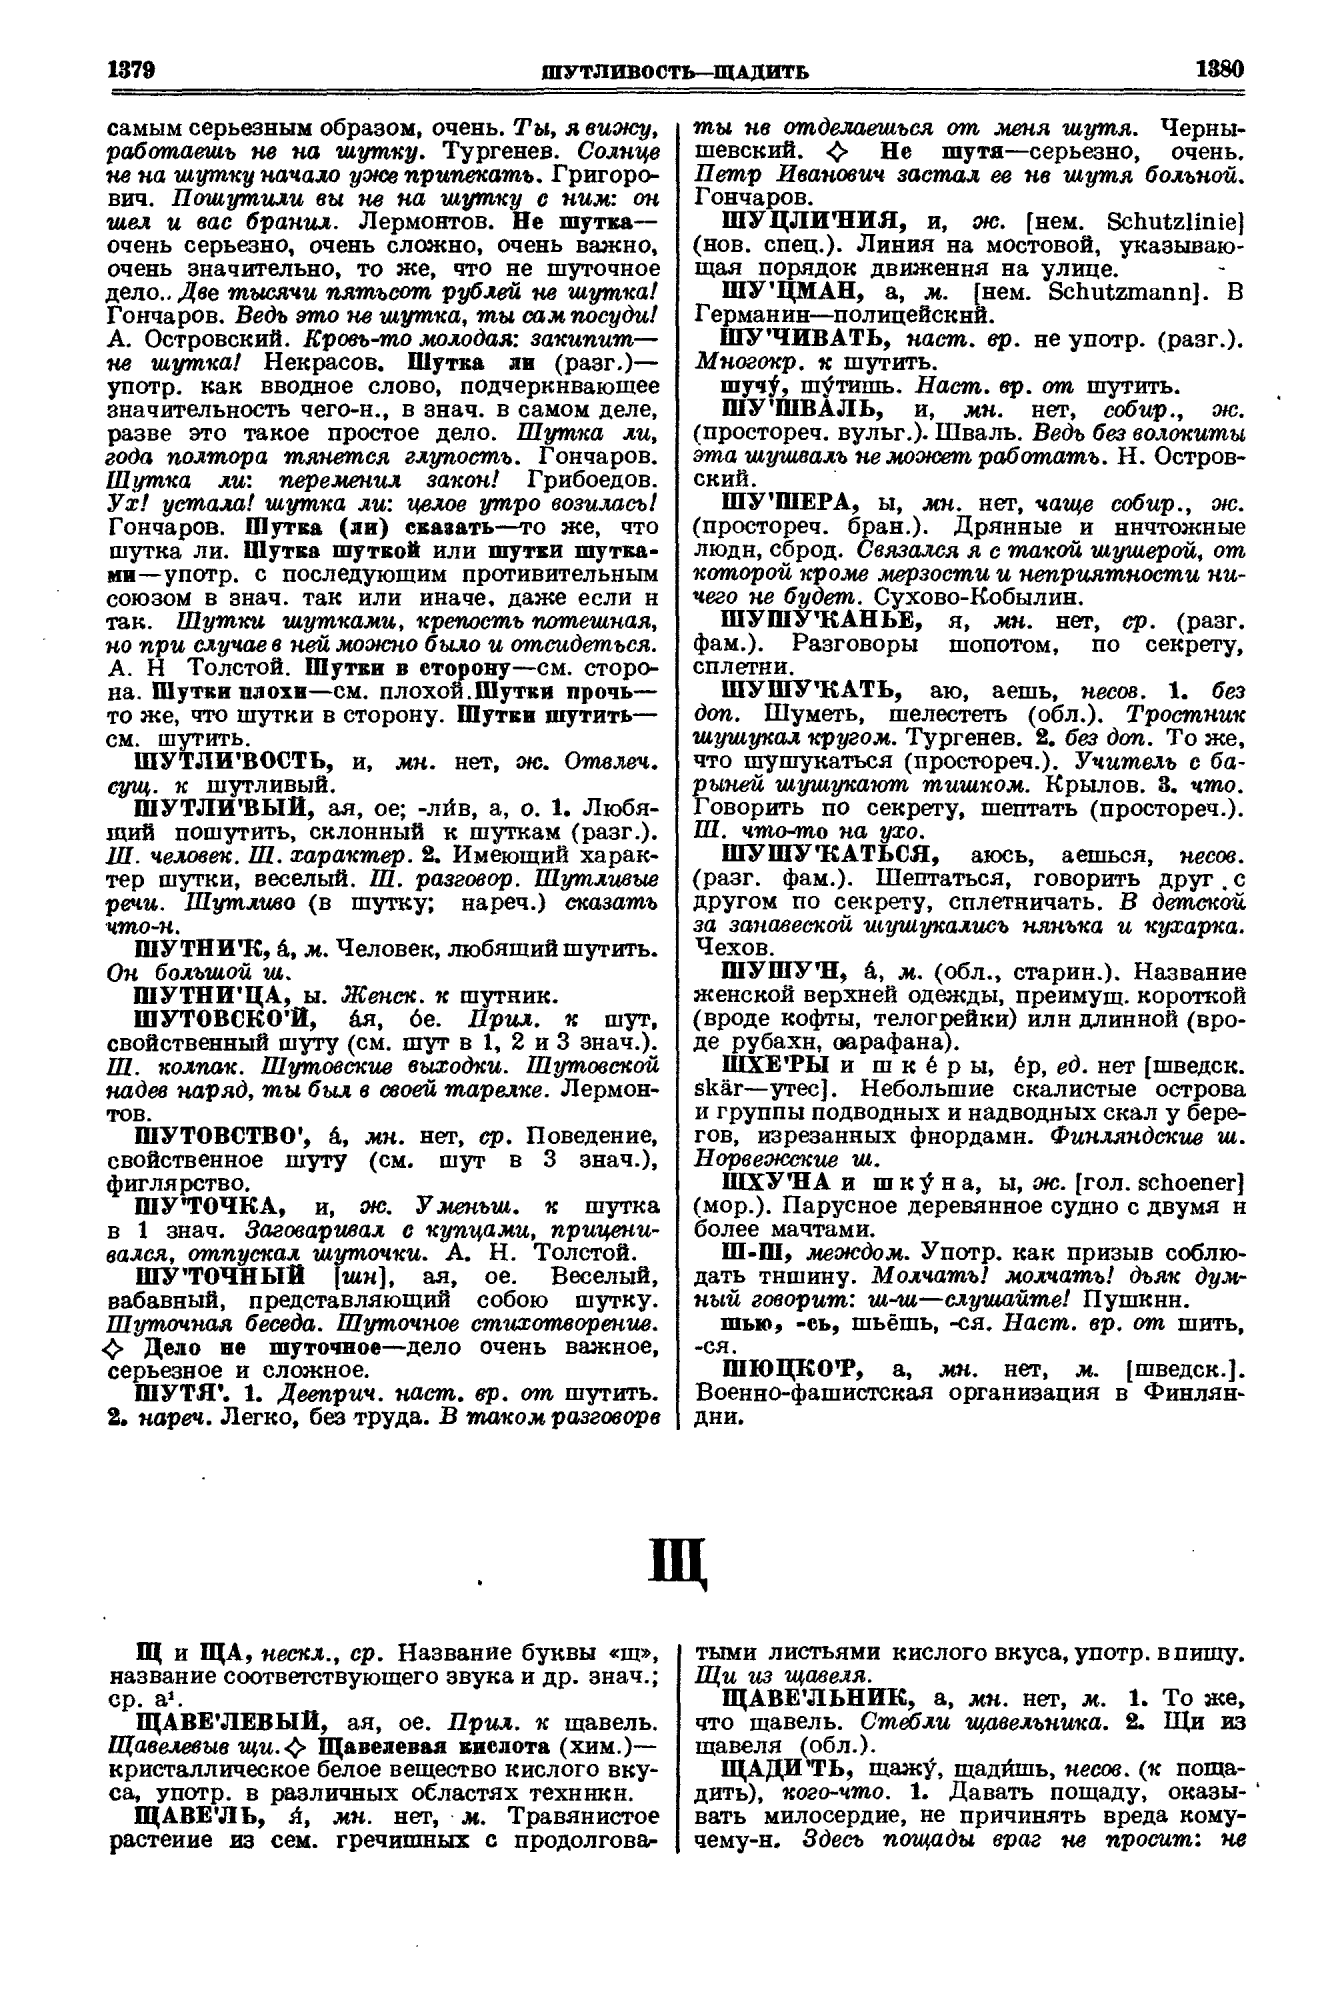 Фотокопия pdf / скан страницы 690 толкового словаря Ушакова (том 1)